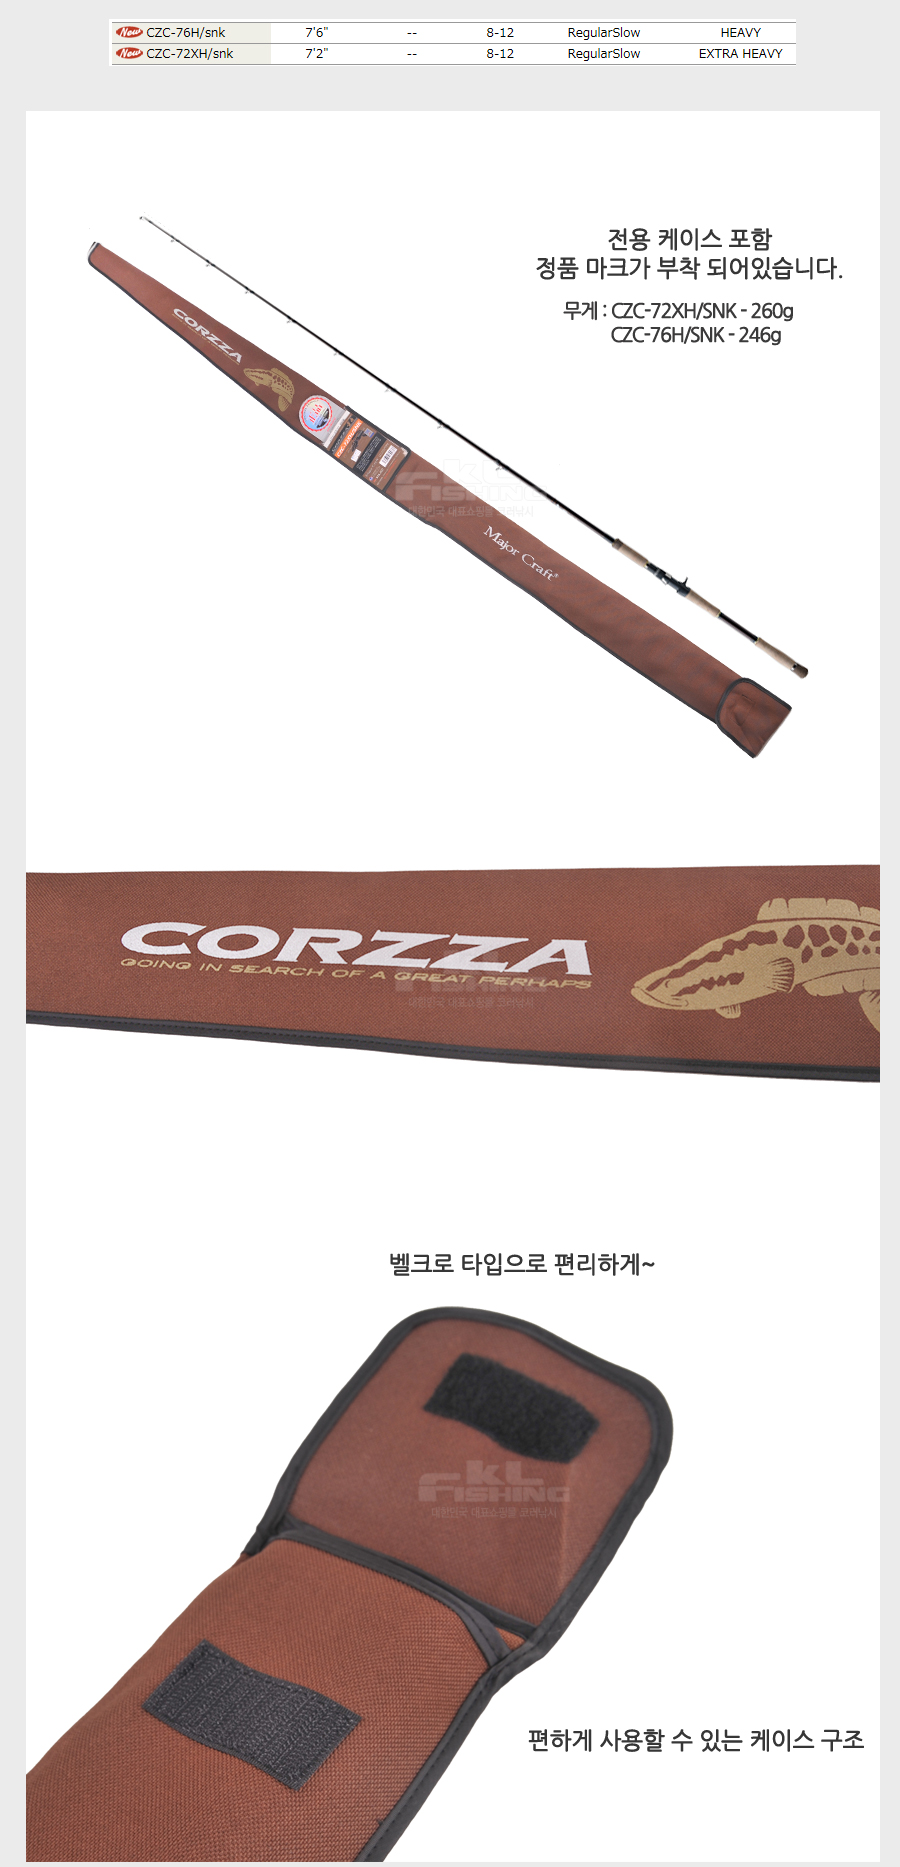 가물치낚시대 가물치루어대 가물치 메이져크래프트 코르자 corzza